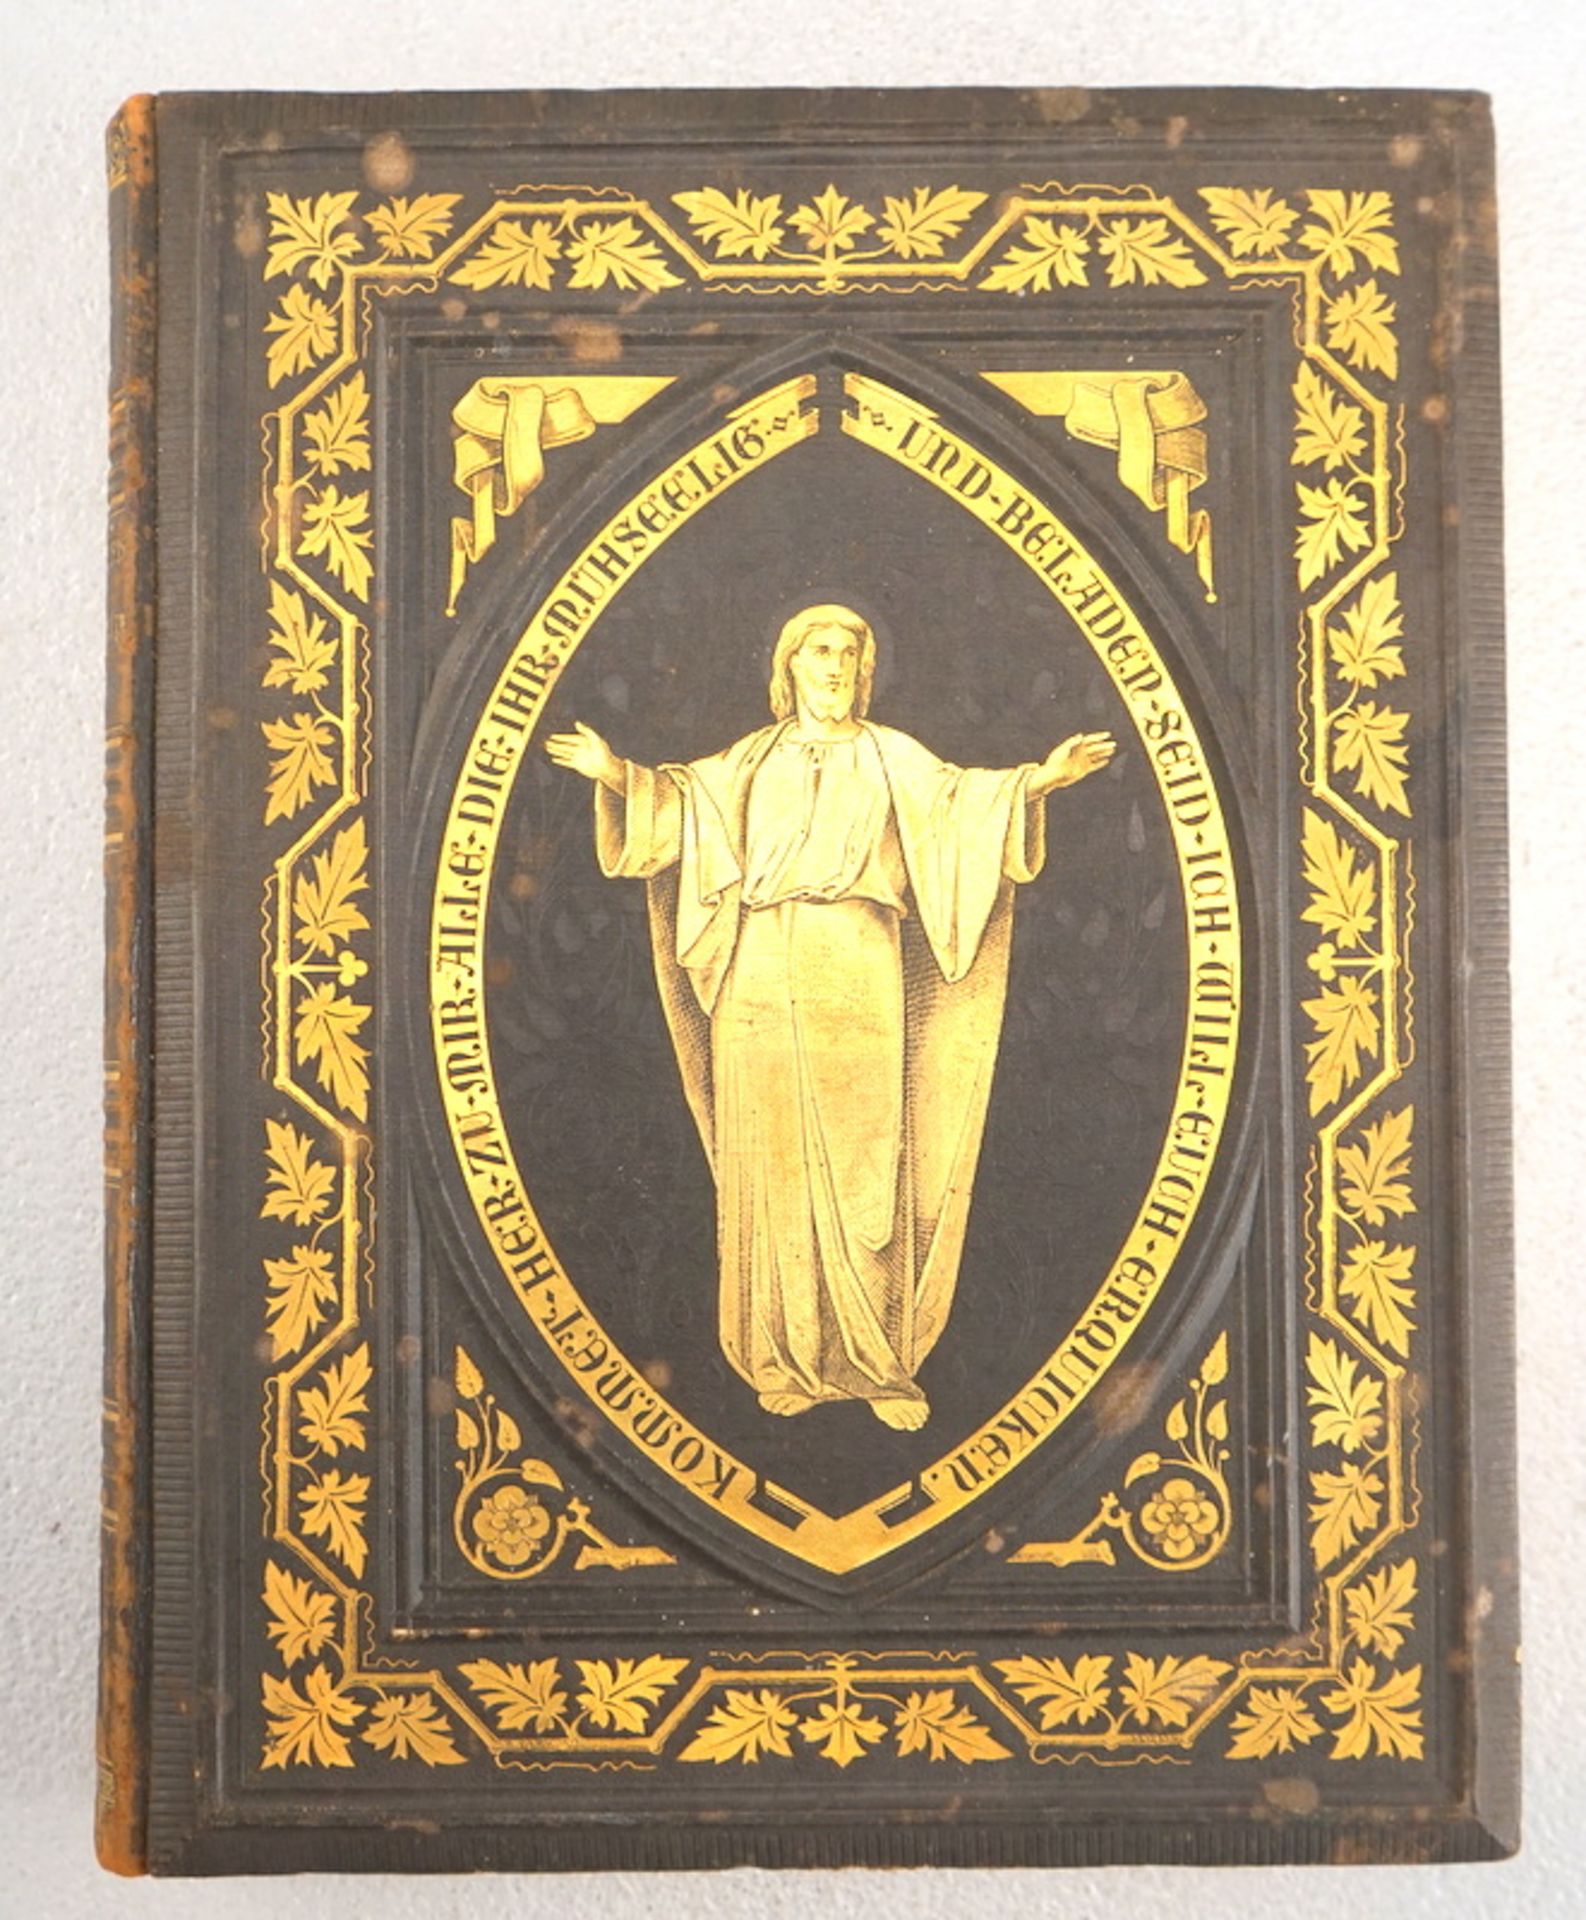 Heilige Schrift nach Luther, Prunkeinband, 1837